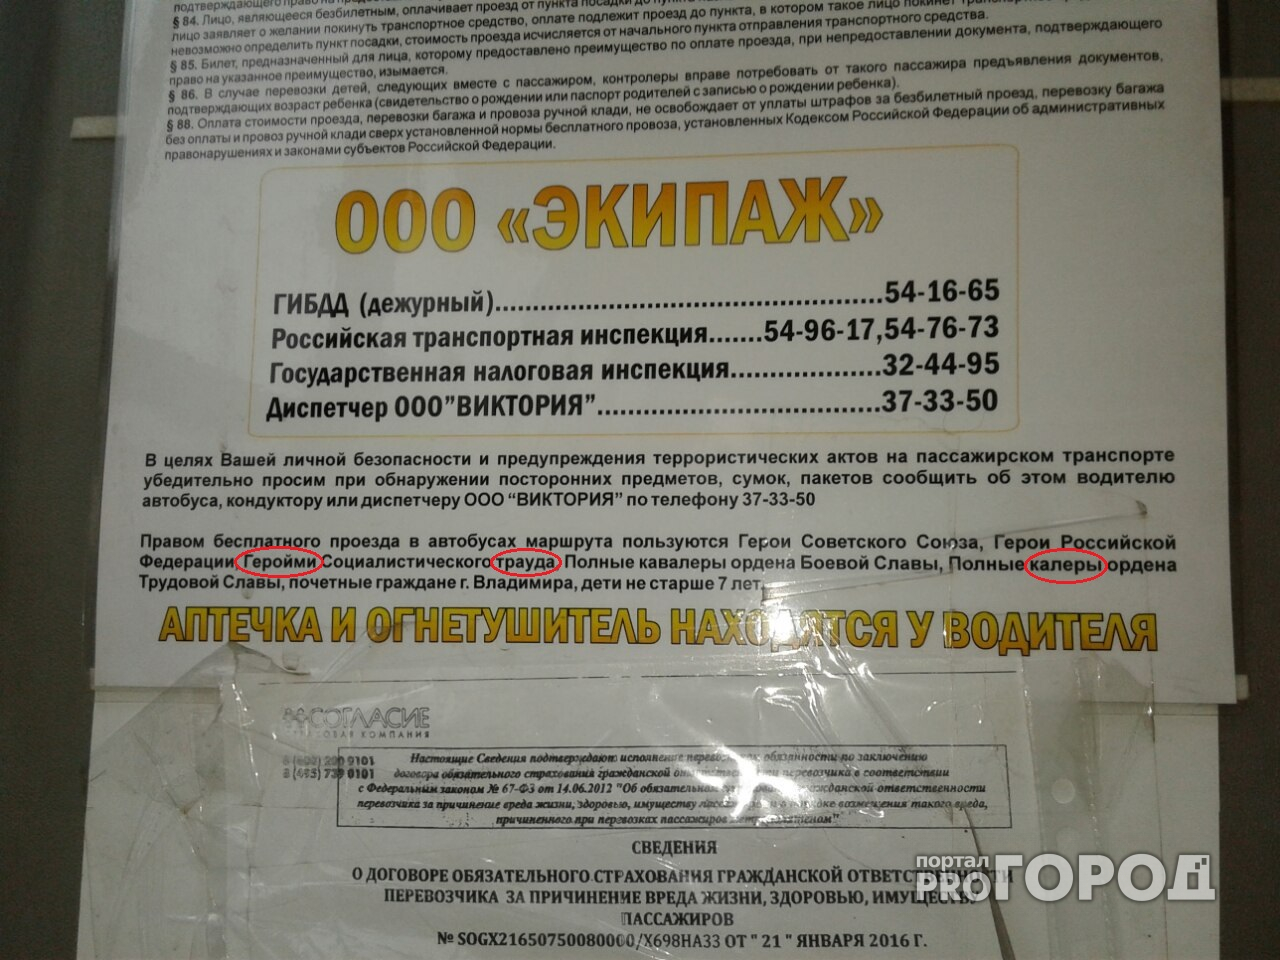 Во Владимирских маршрутках предоставляются скидки "калерам" и "геройм"